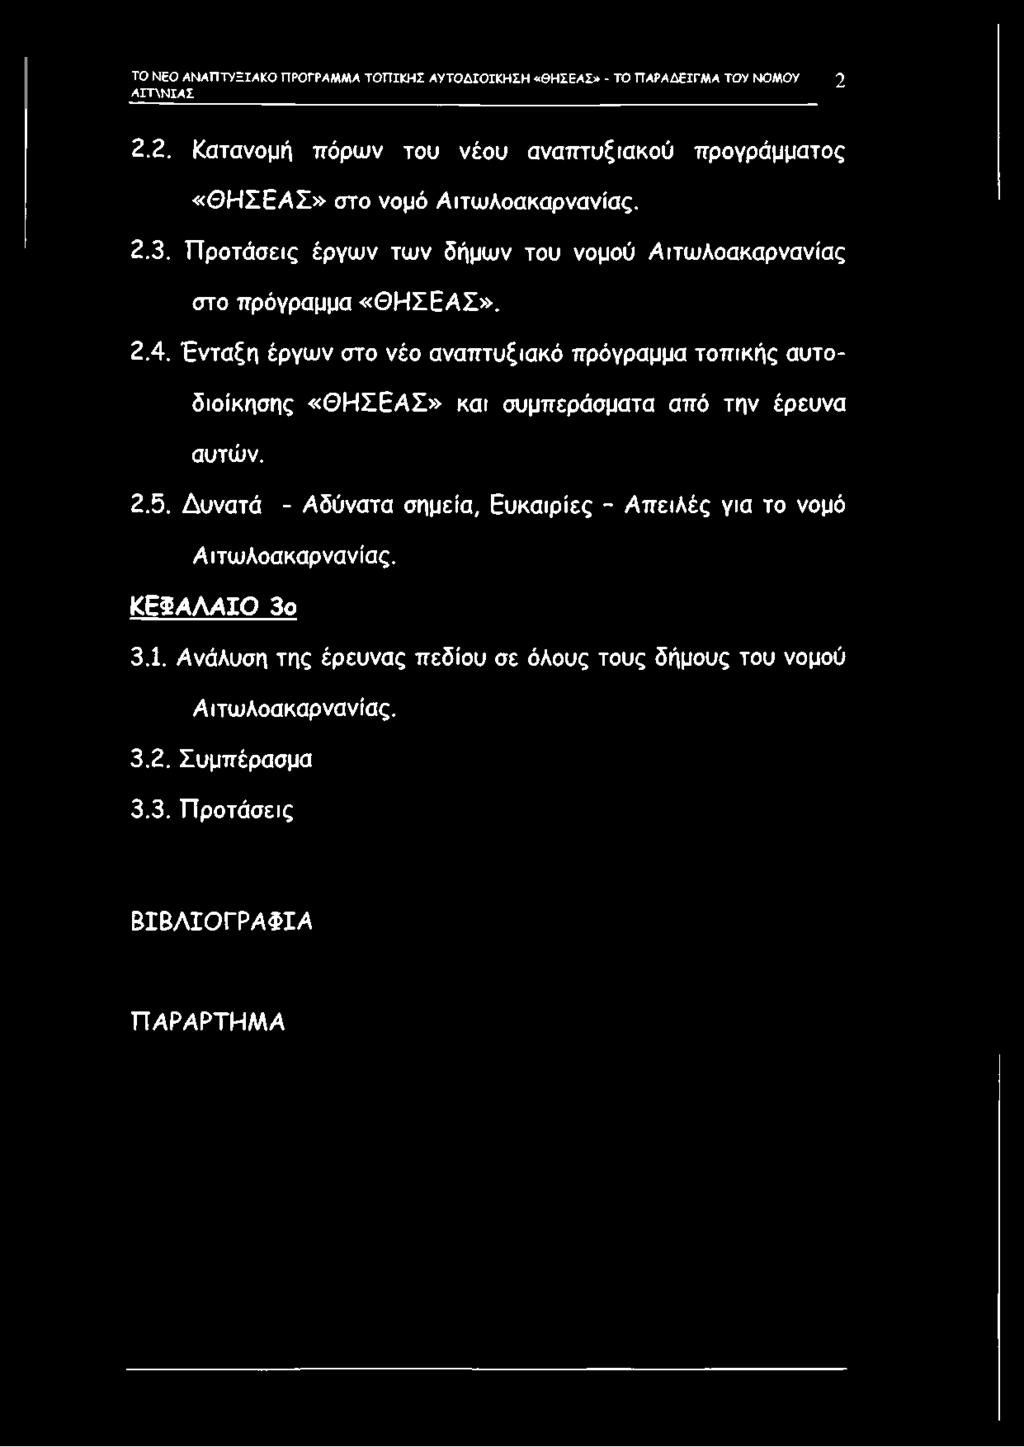 Προτάσεις έργων των δήμων του νομού Αιτωλοακαρνανίας στο πρόγραμμα «Θ Η ΣΕΑΣ». 2.4.